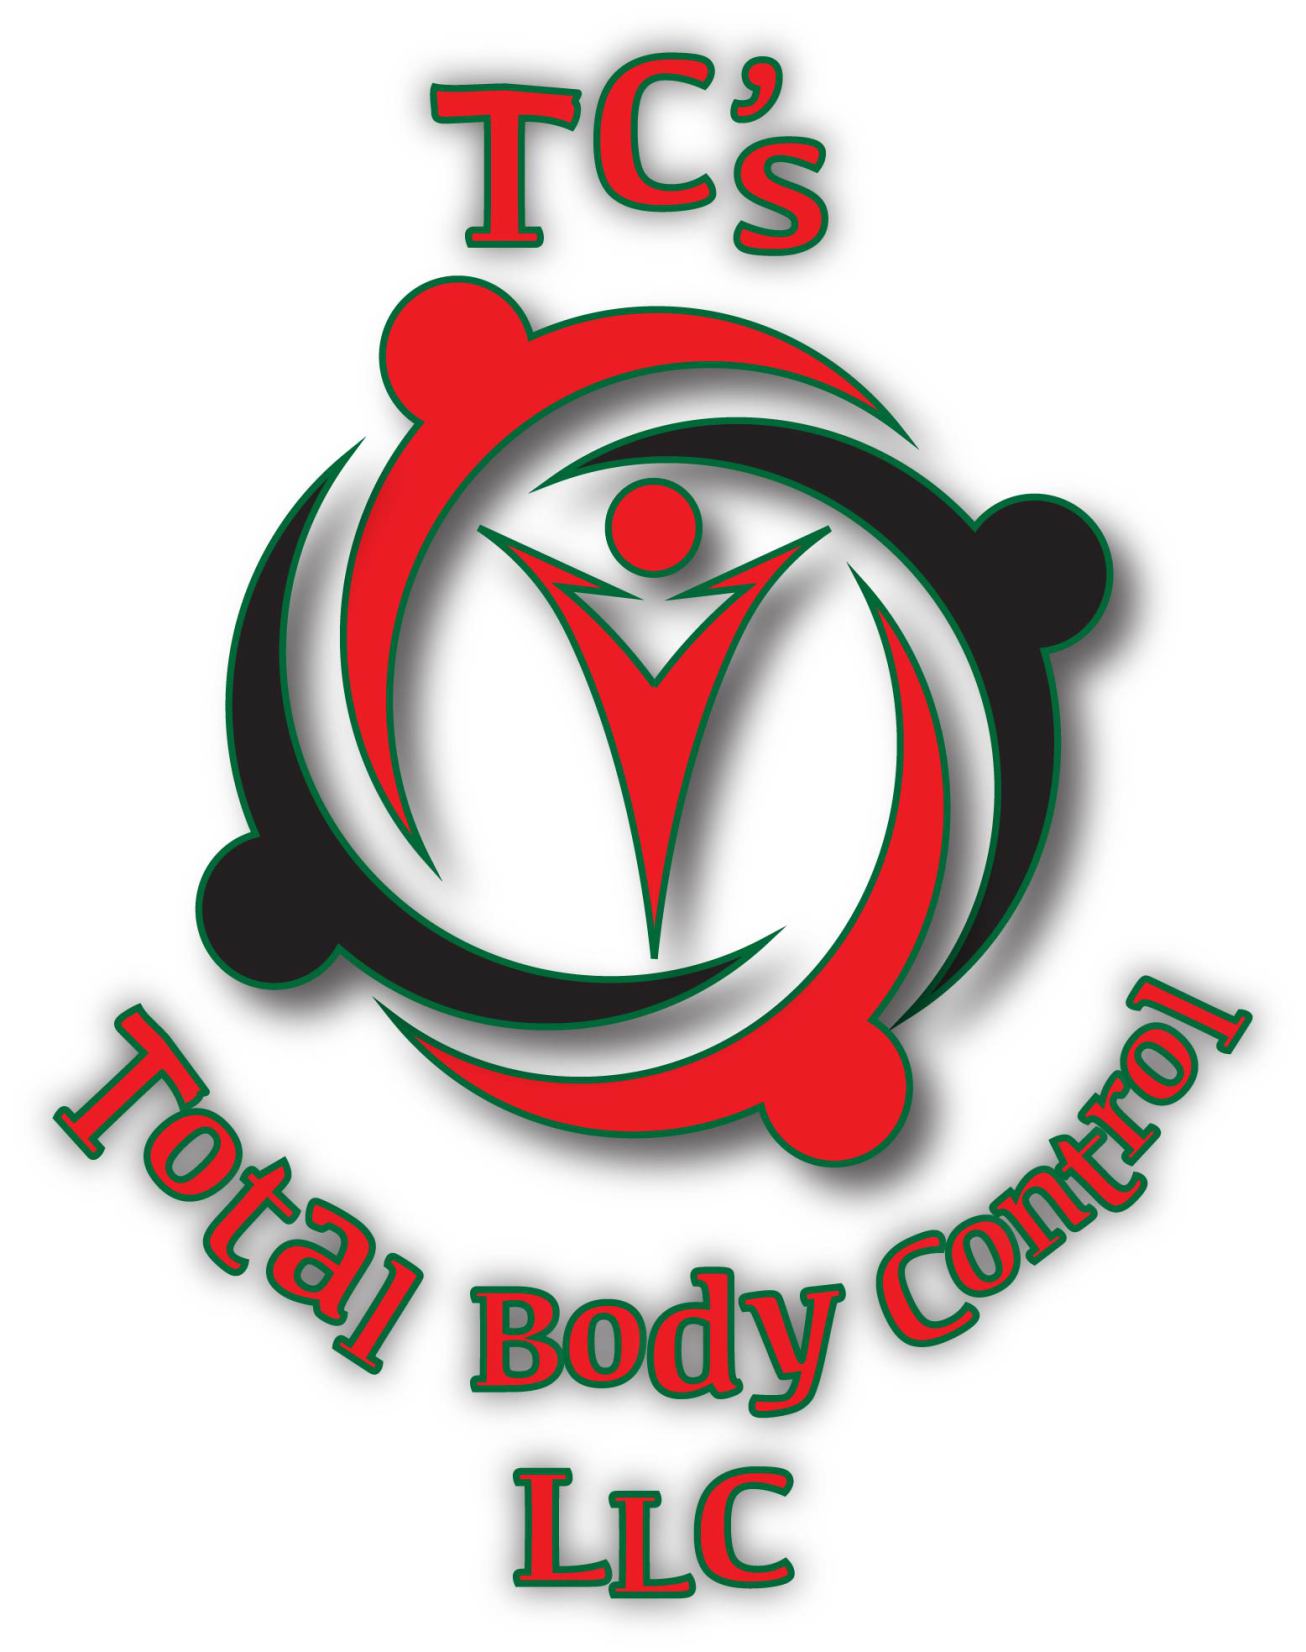 Whole Body Health, LLC